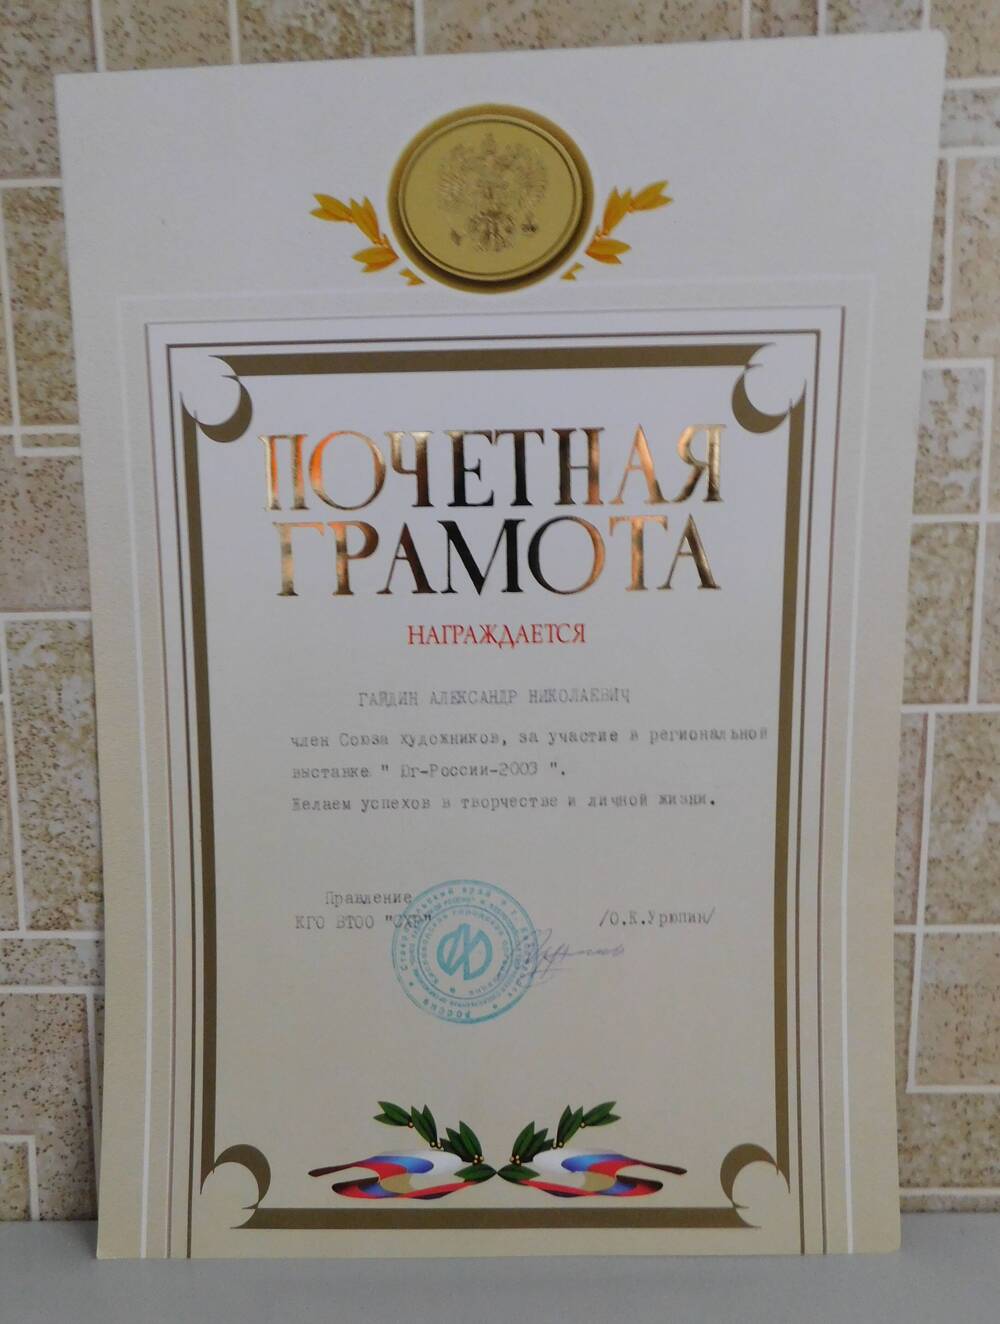 Почётная грамота КГО ВТОО СХР Гайдину А.Н. - члену Союза художников, за участие в региональной выставке Юг-России-2003.